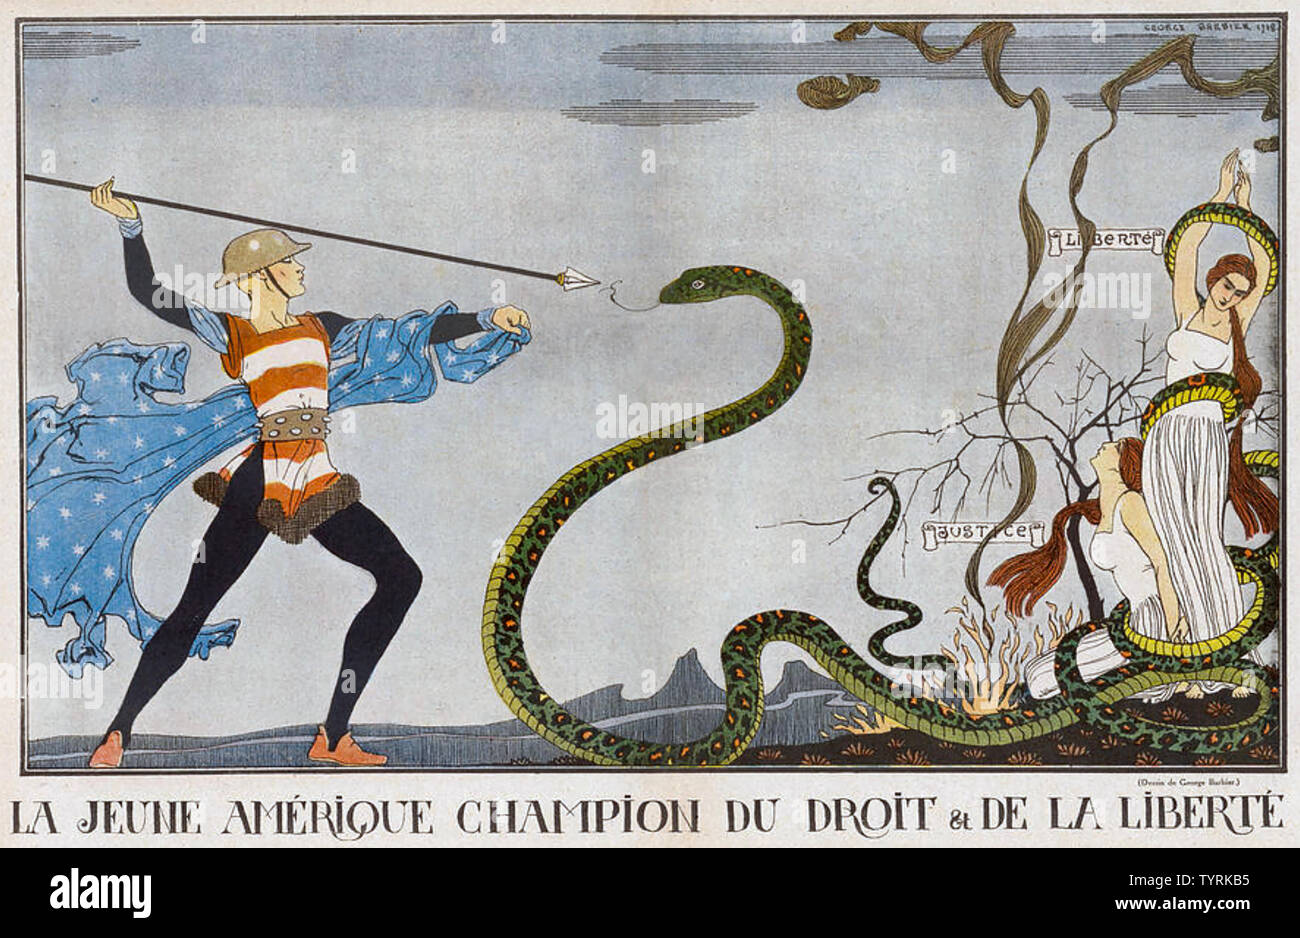 YOIUNG AMERIKA RETTET EUROPA französische Karikatur von 1918 Stockfoto